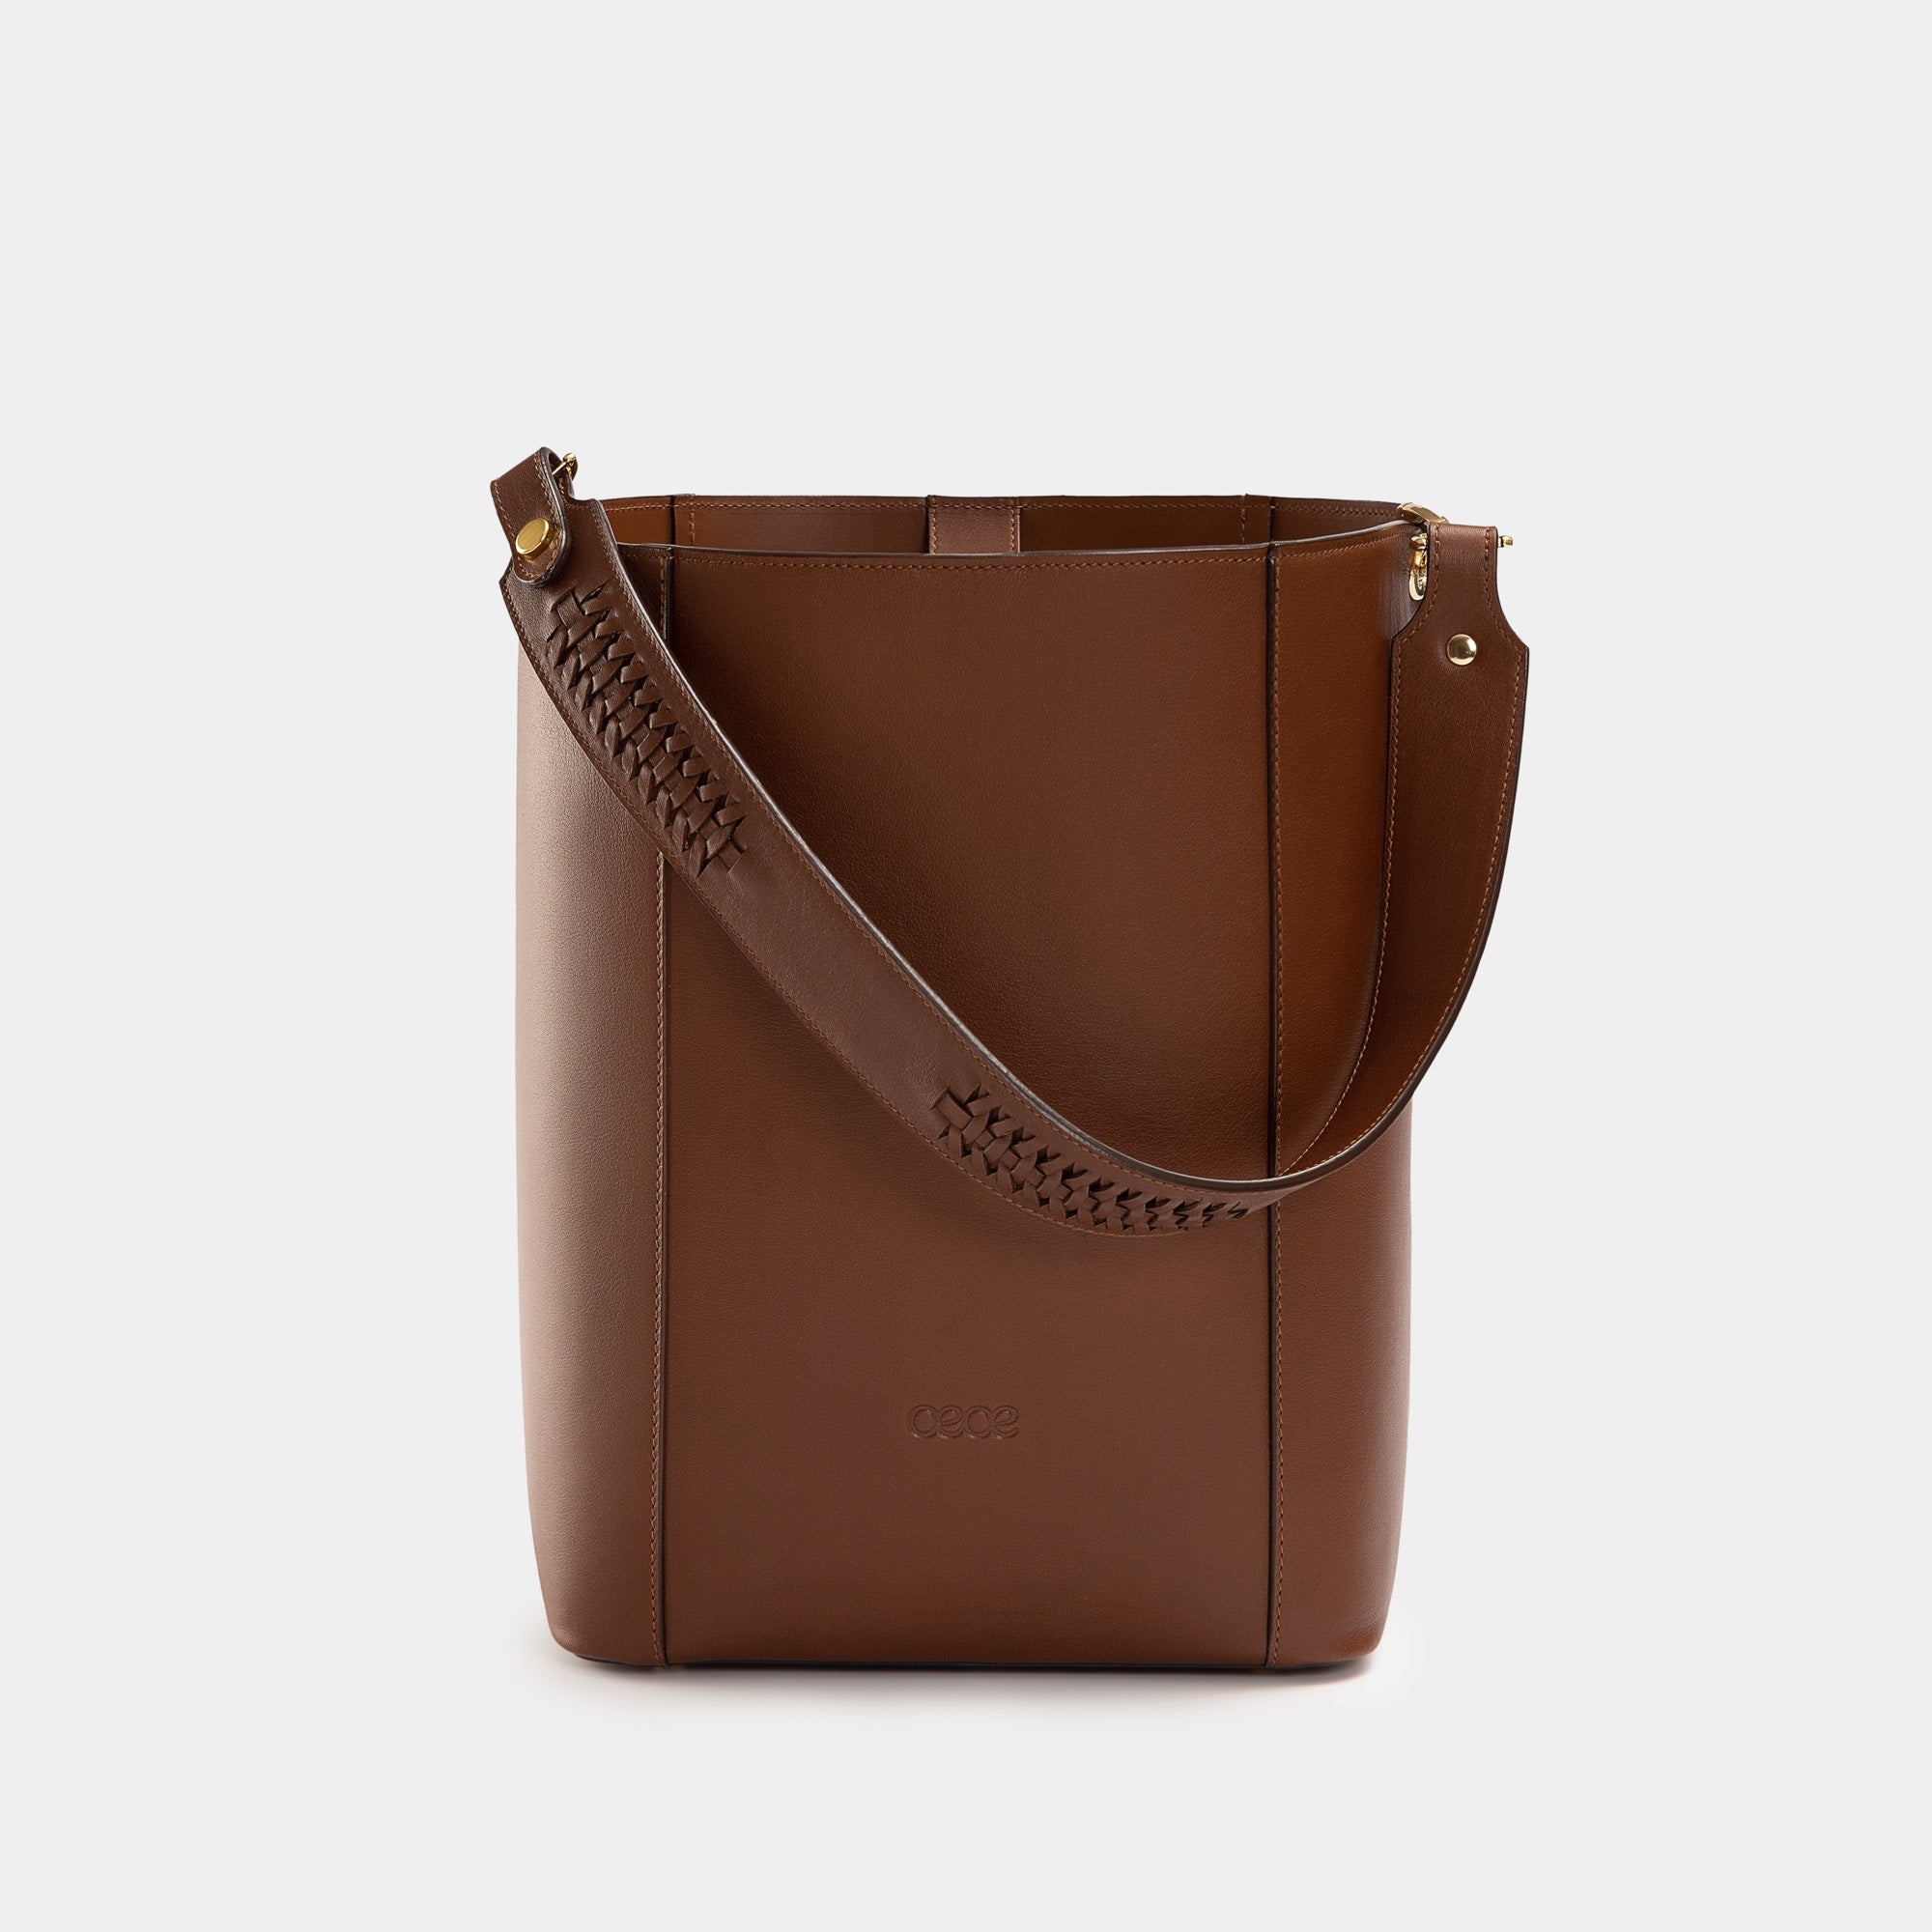 Bolso de piel marrón - OEOE Handbags